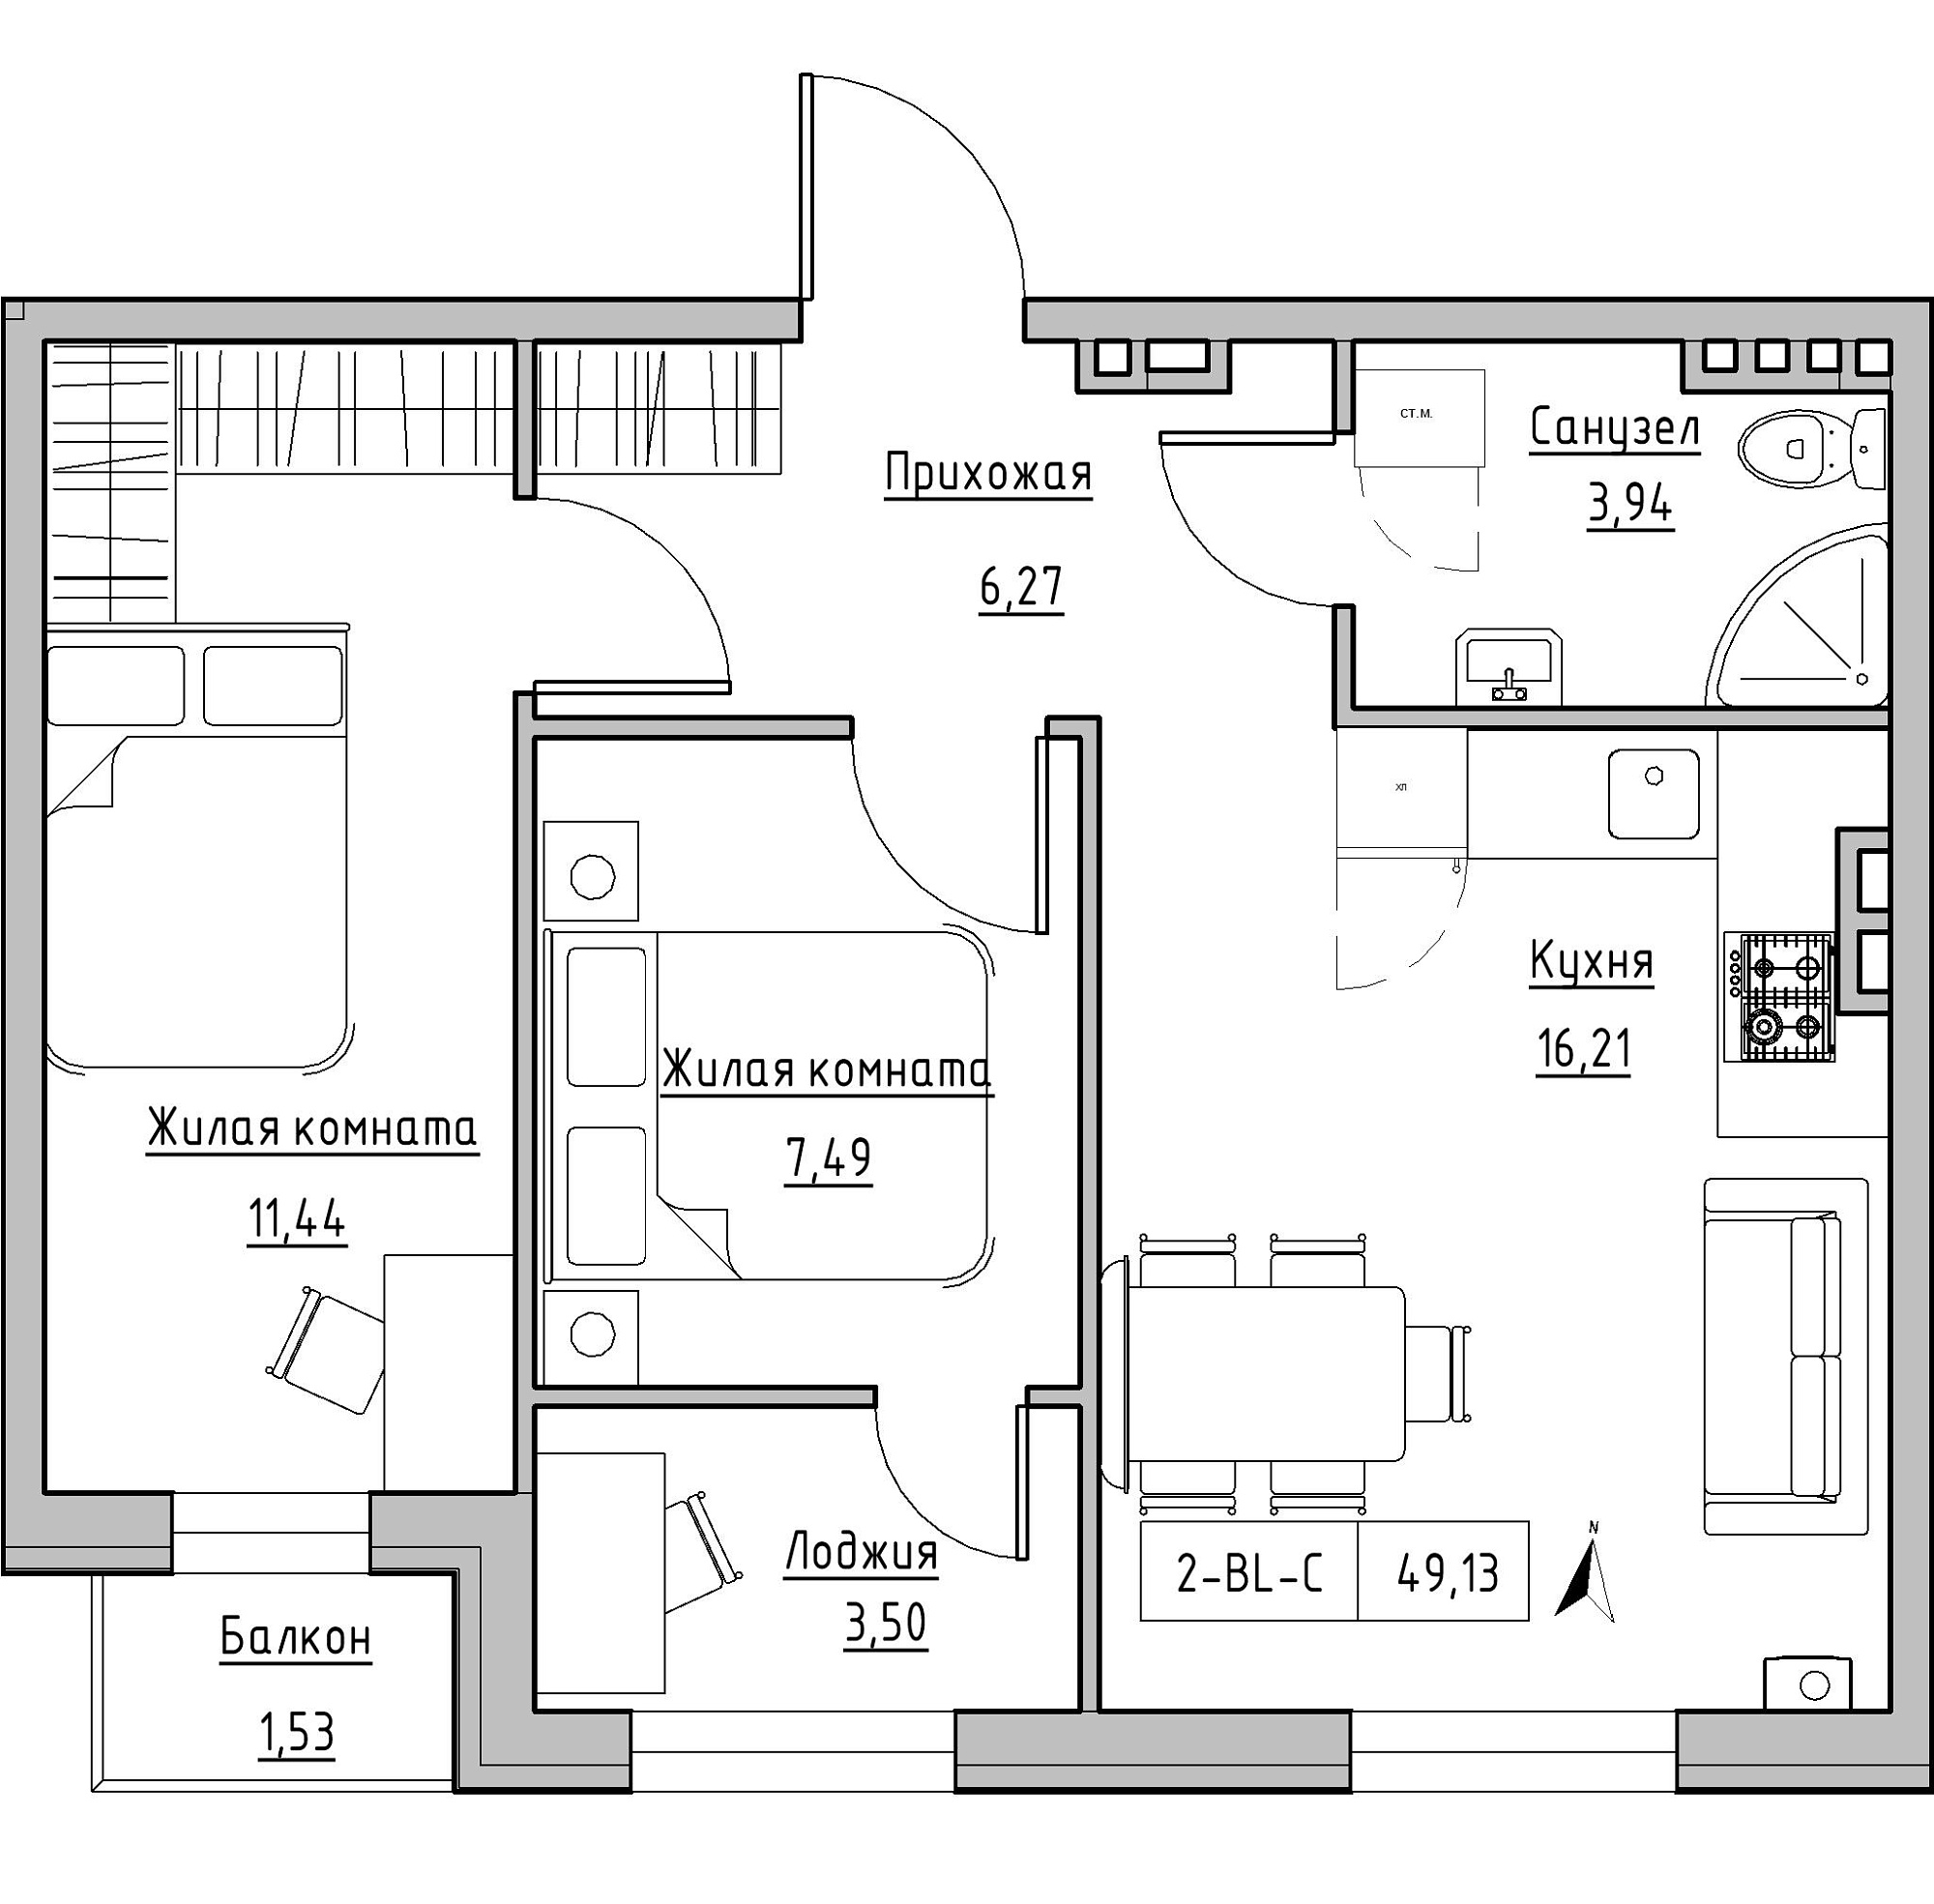 Планування 2-к квартира площею 49.13м2, KS-024-03/0009.